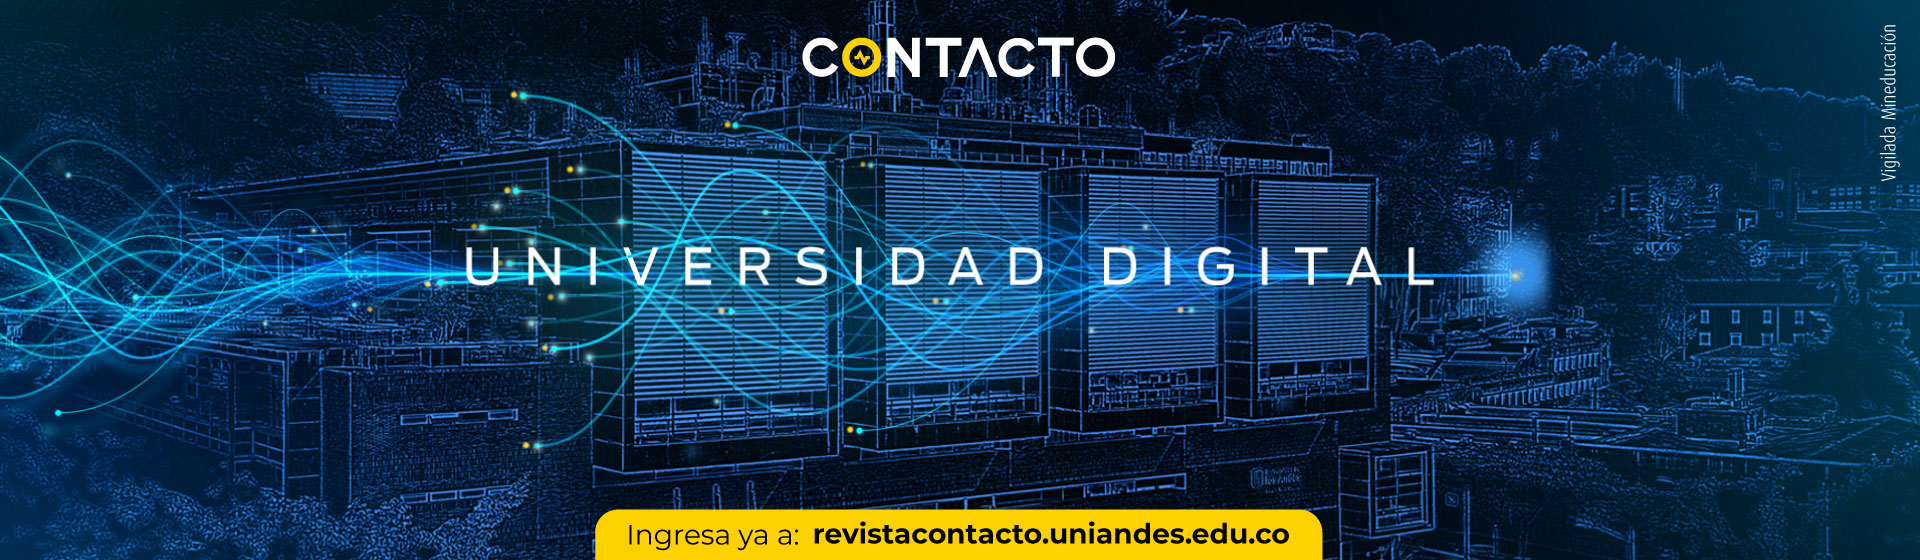 CONTACTO: Universidad Digital